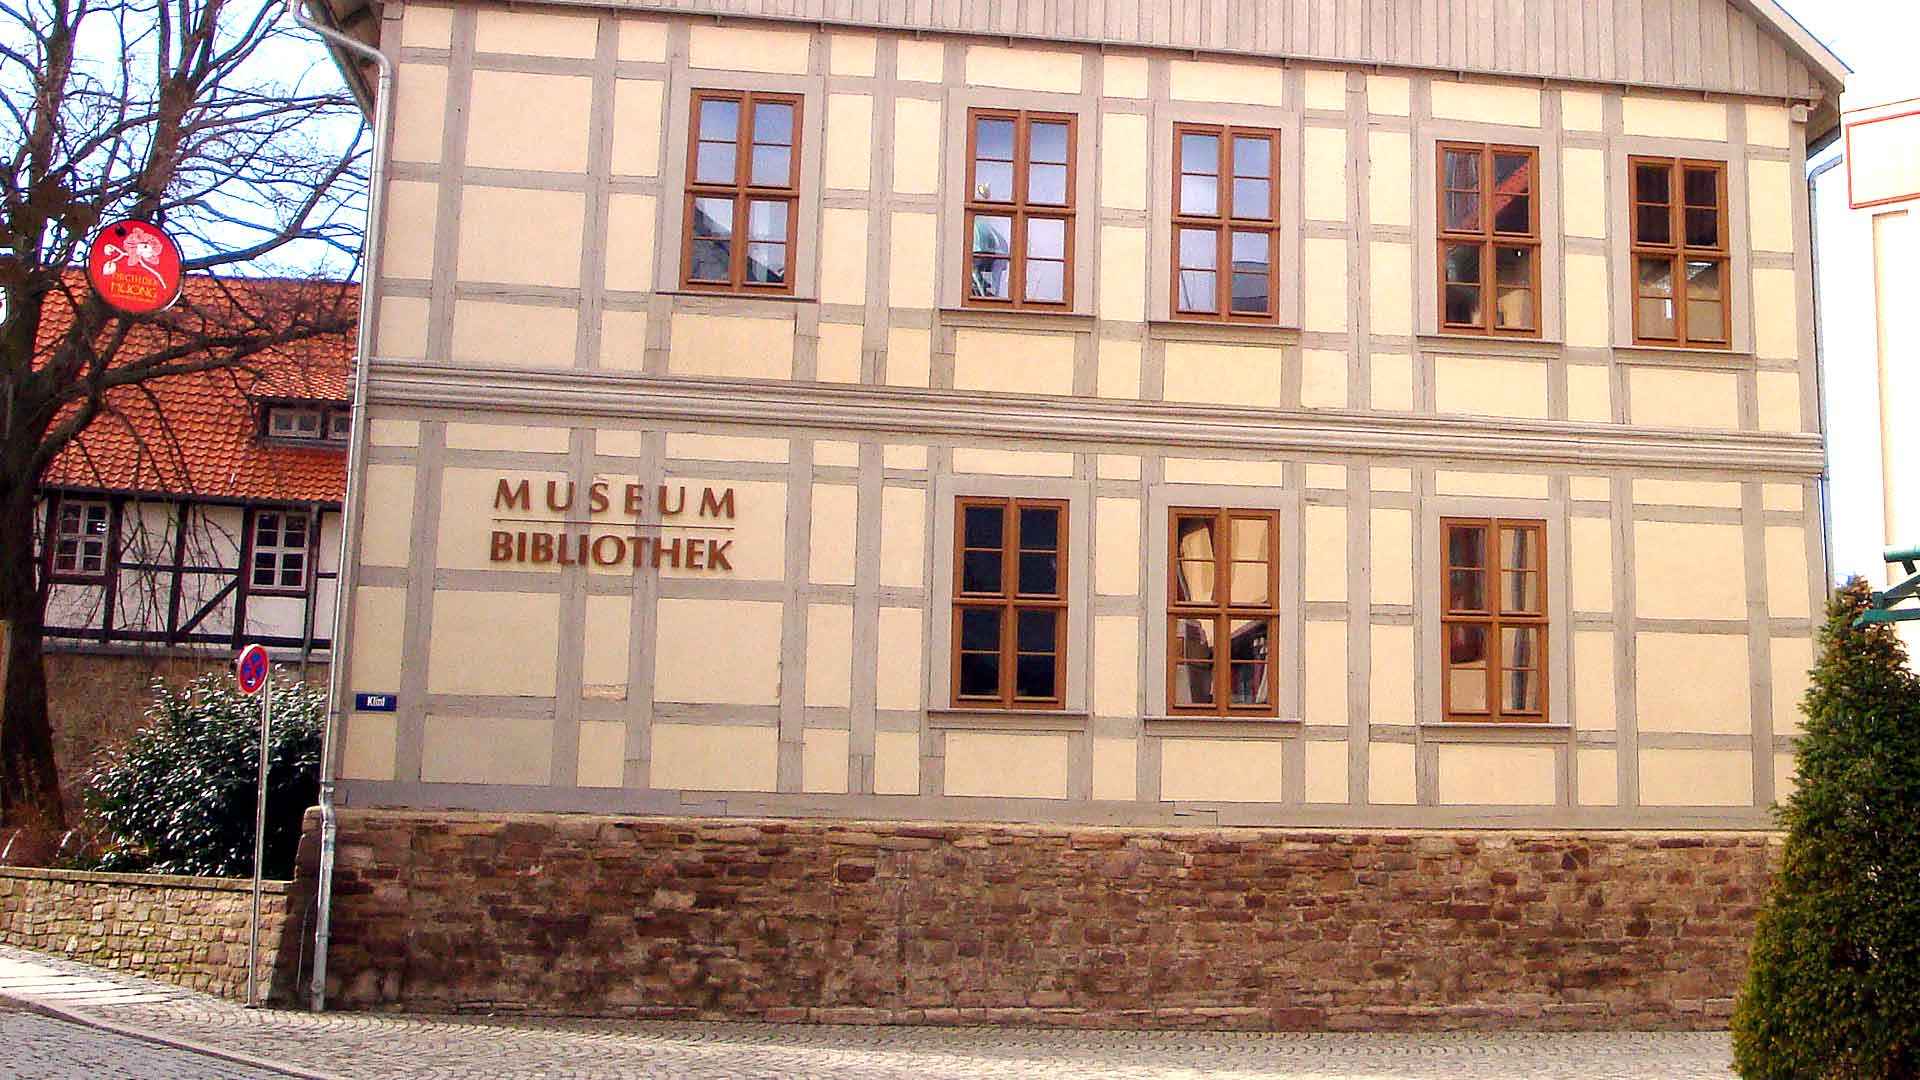 Harzmuseum und Bibliothek in Wernigerode